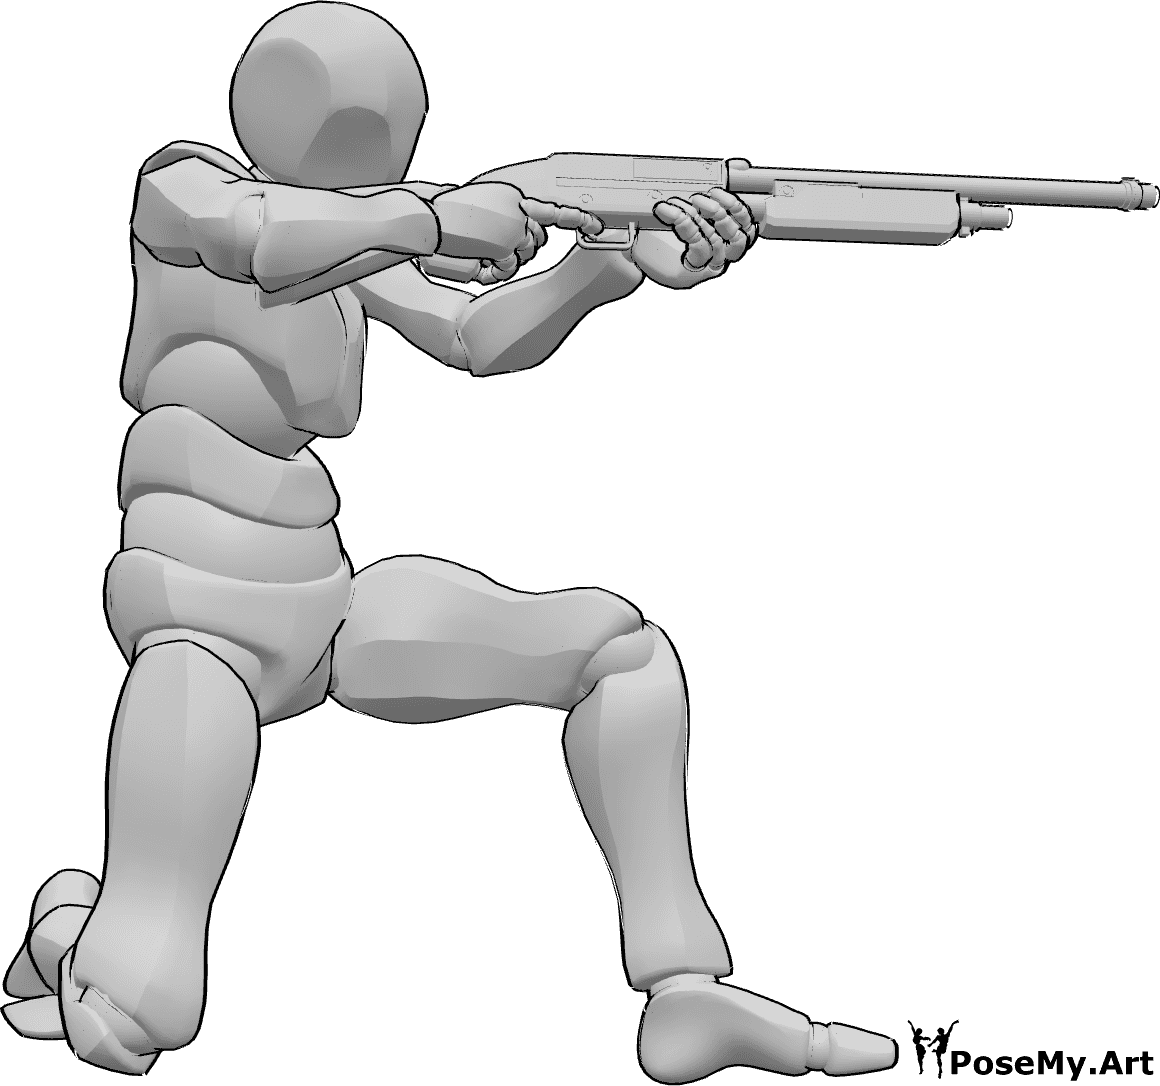 Referencia de poses- Postura de disparo de escopeta - Varón arrodillado, sujetando la escopeta con ambas manos, apuntando y disparando pose